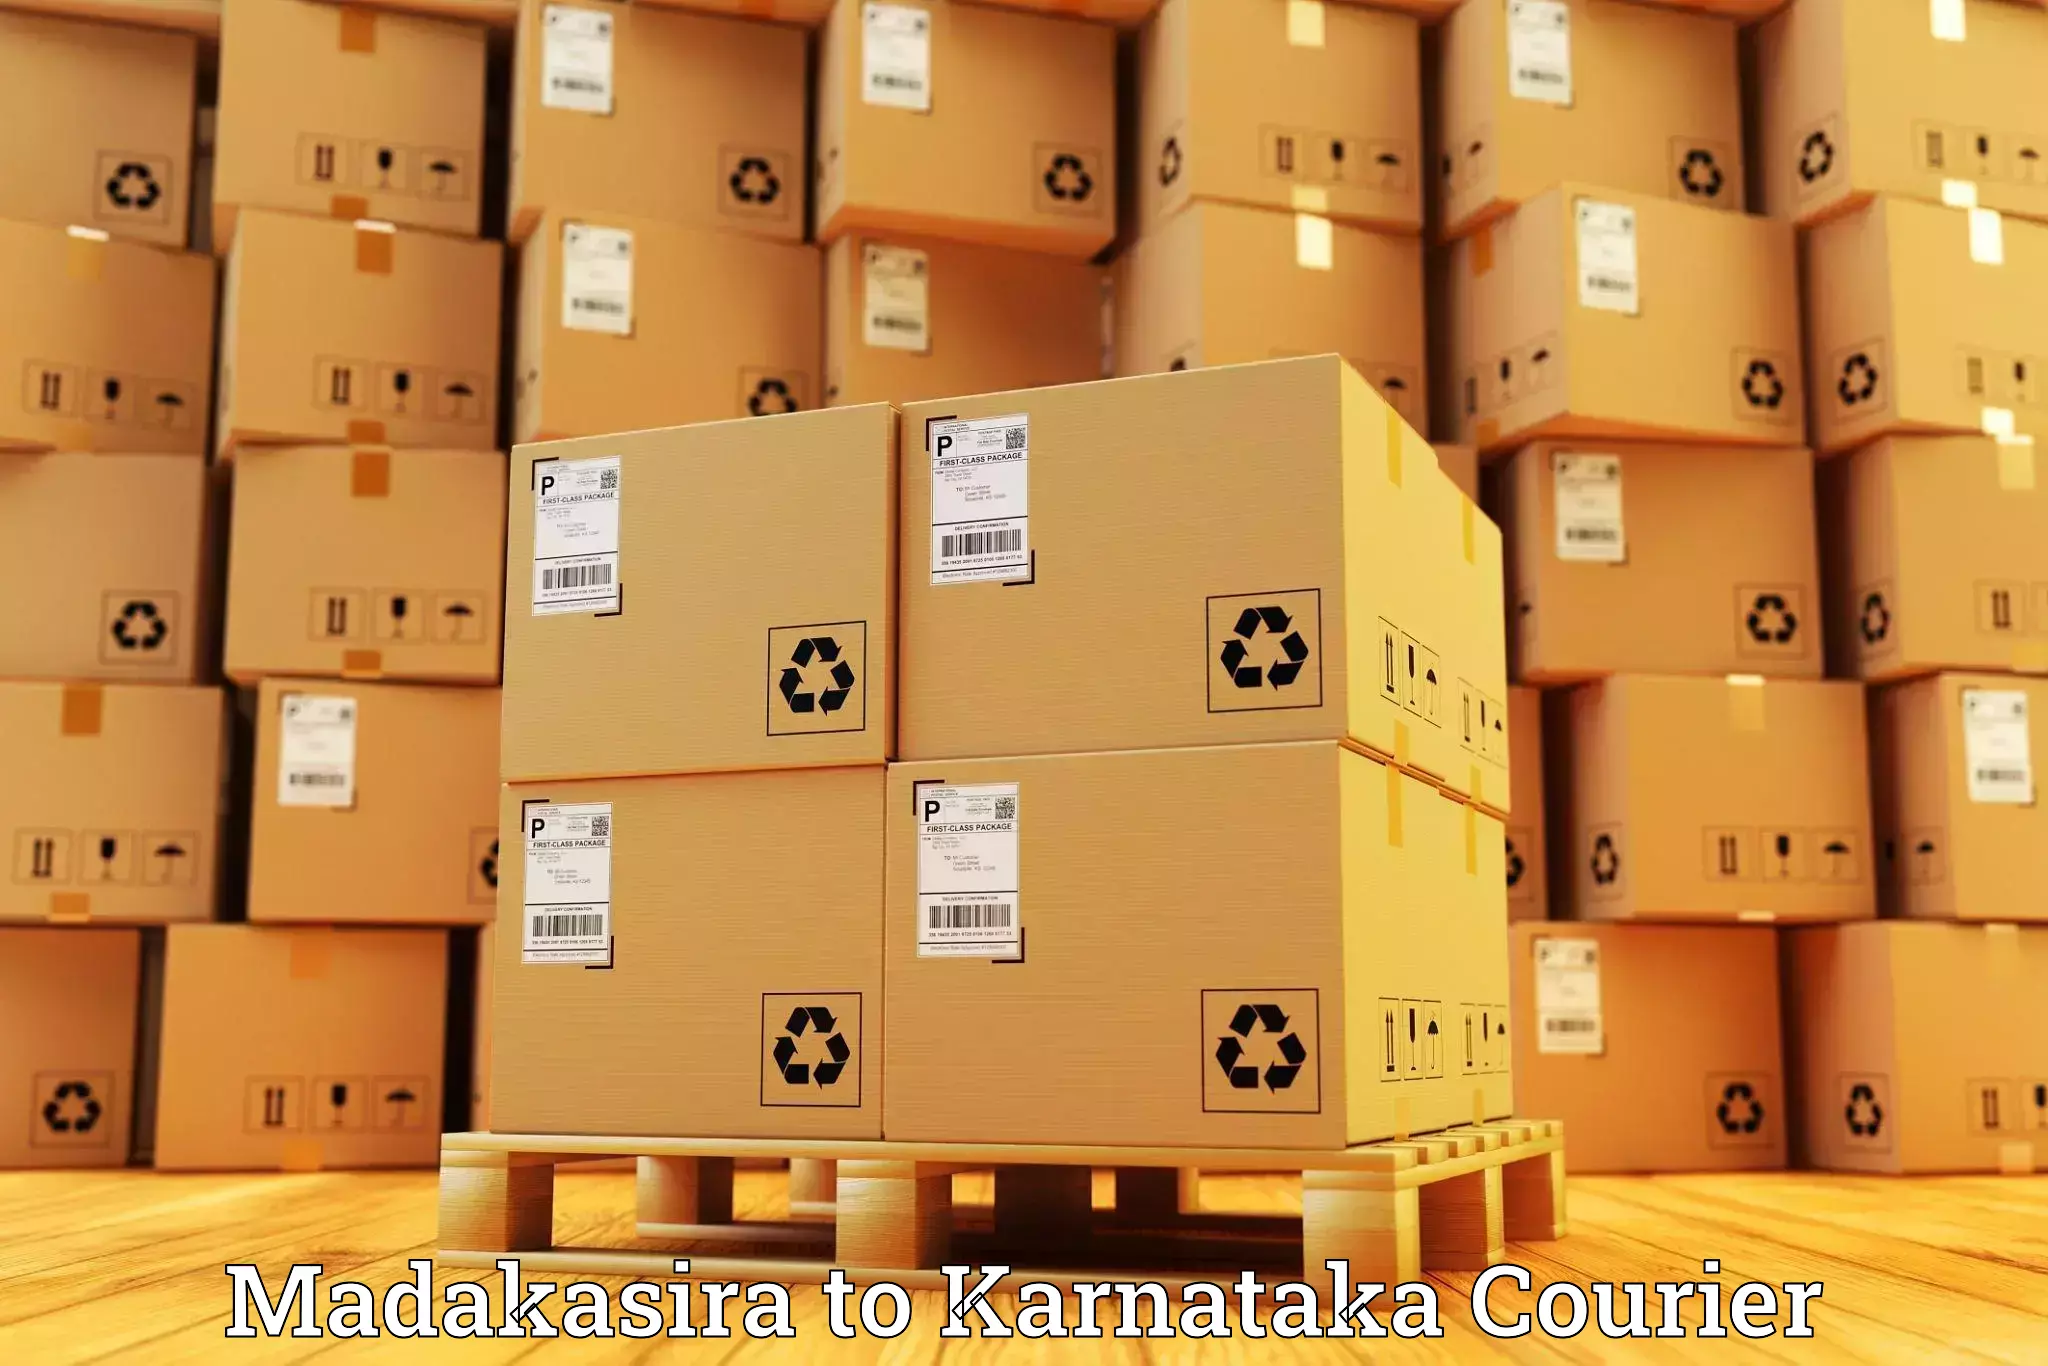 Air courier services Madakasira to Karnataka